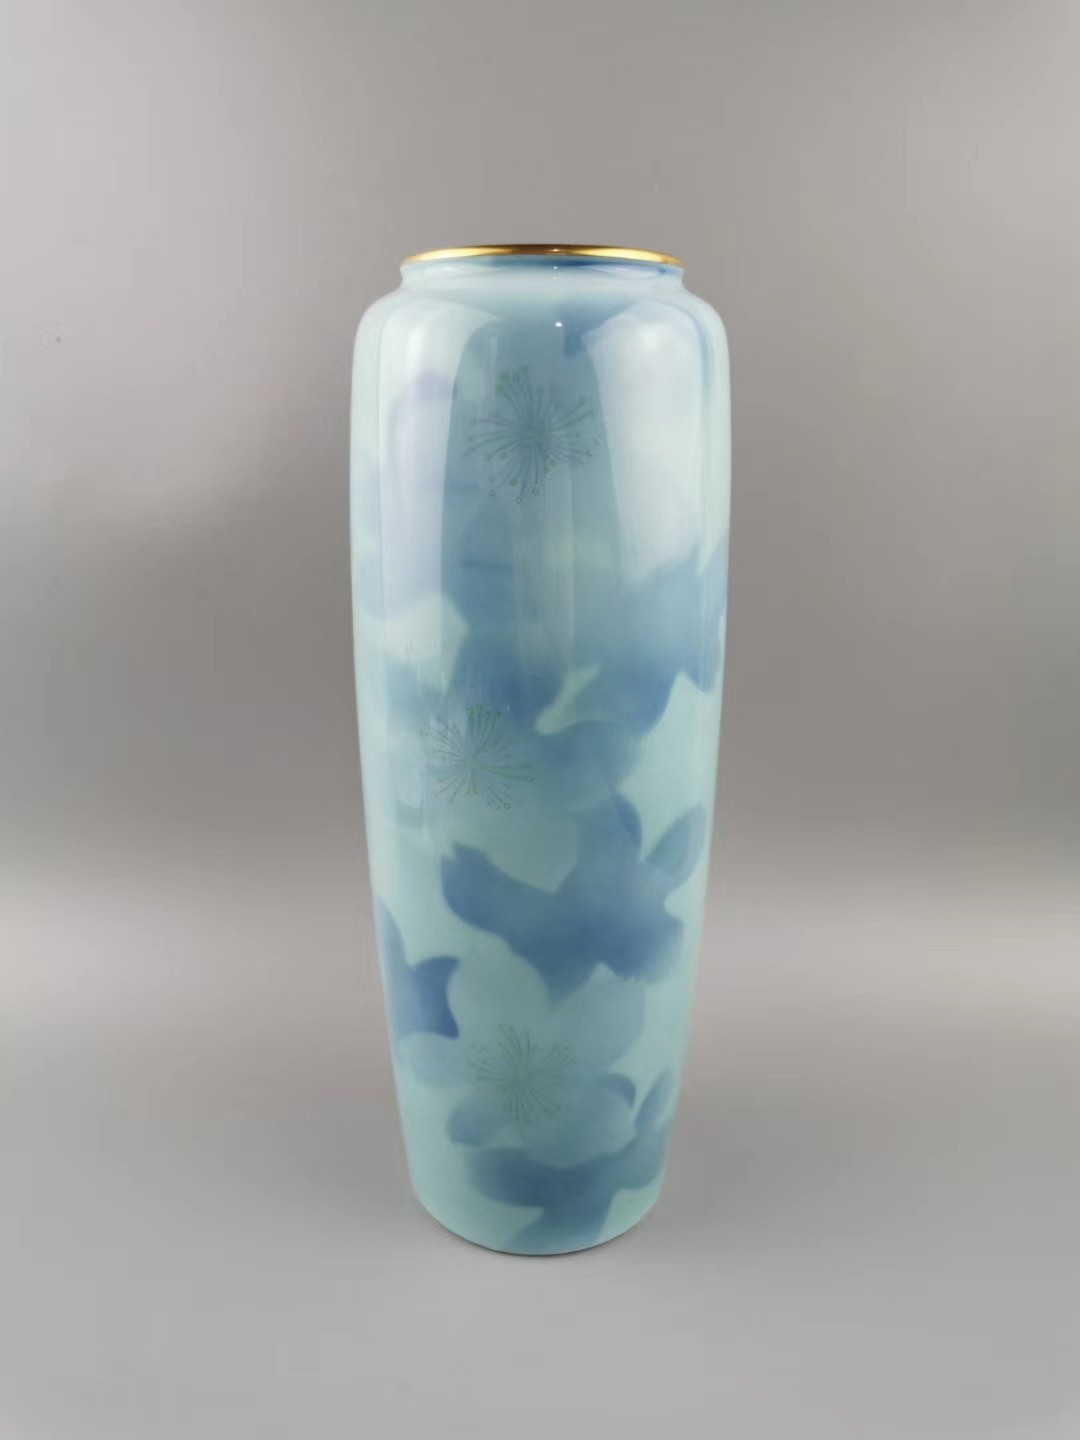 日本深川制瓷 陶瓷花瓶 皇室御用 官窑染付花图  极具收藏价值